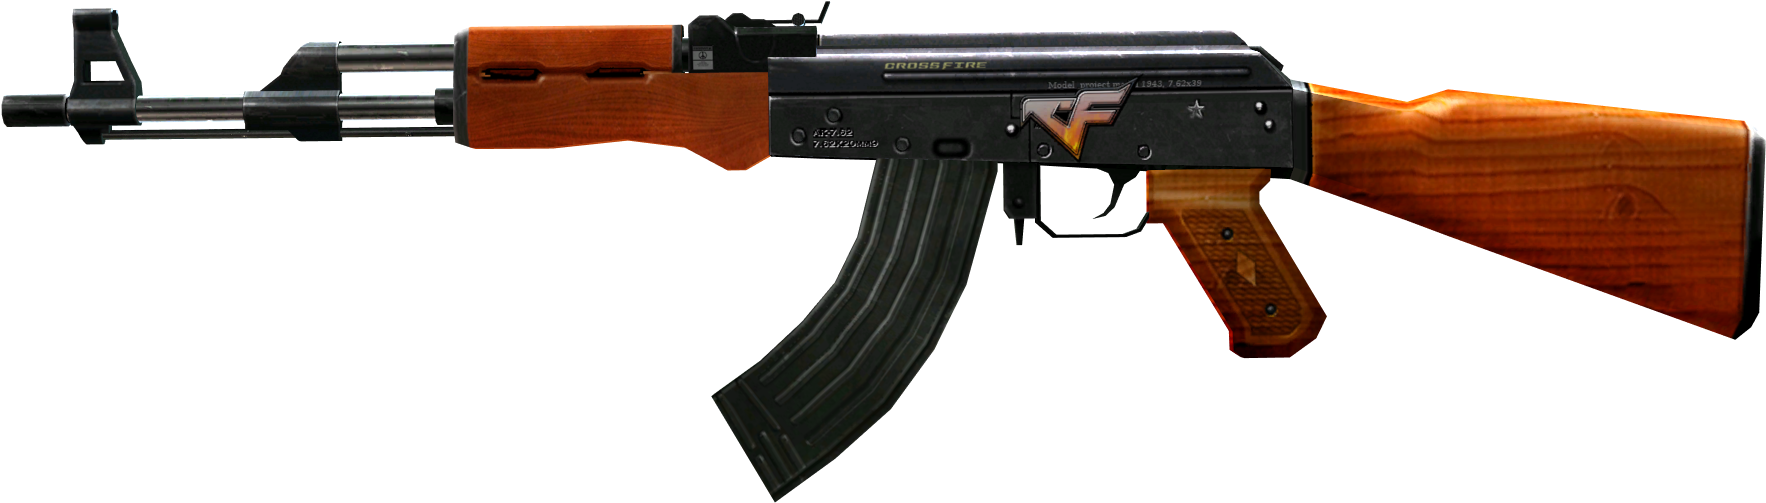 Ak-47 Png - Ak 47 Png (1920x1080)